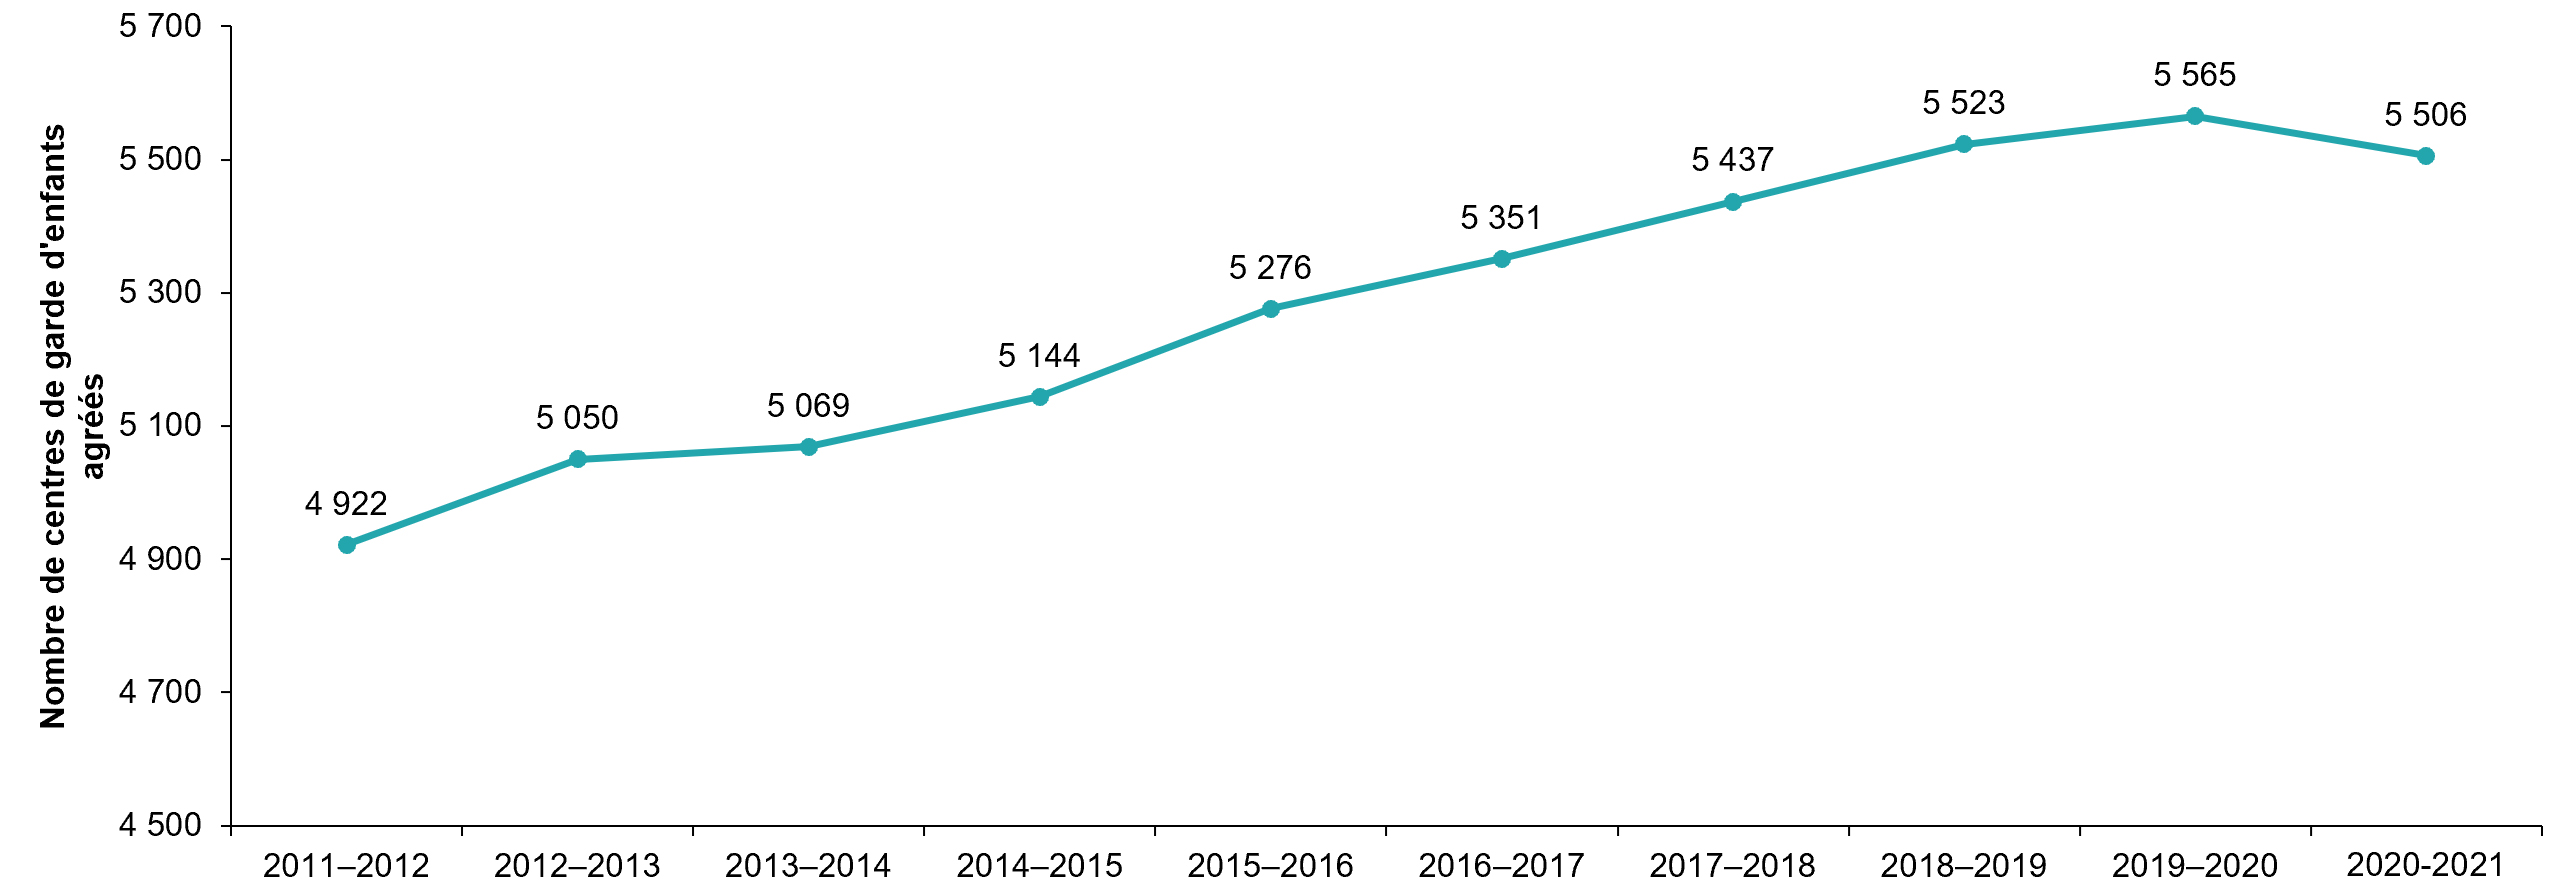 Nombre de centres de garde d’enfants agréés, de 2011-2012 à 2020-2021